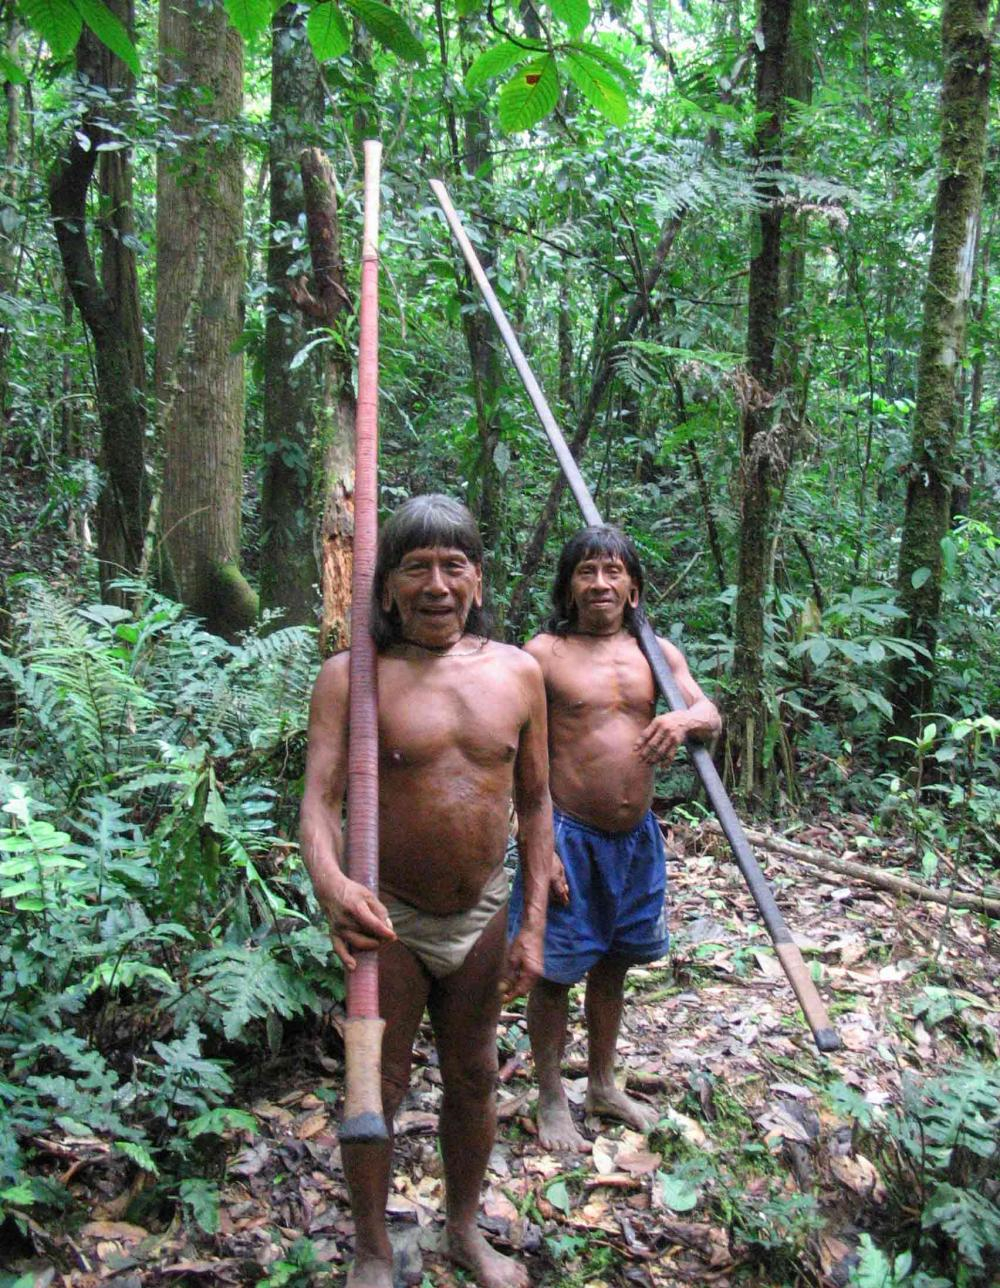 原创             南美有个哑巴部落，5万人一辈子不说一句话，喜欢生吃毒蛇